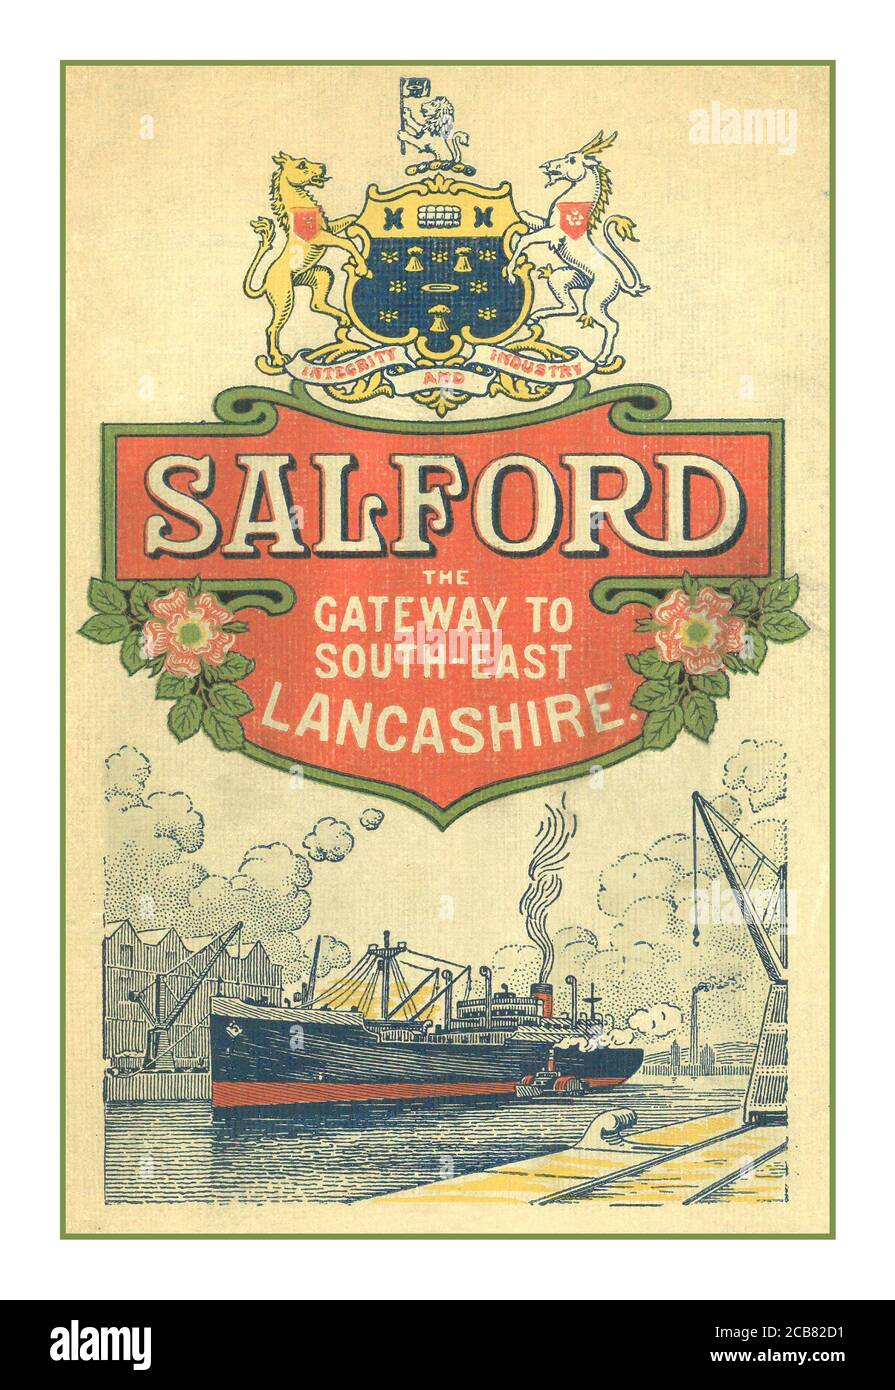 BRITISH EMPIRE EXHIBITION 1920 's Promotional Booklet herausgegeben von Salford Corporation in Verbindung mit der British Empire Exhibition in Wembley im Jahr 1924. Stockfoto